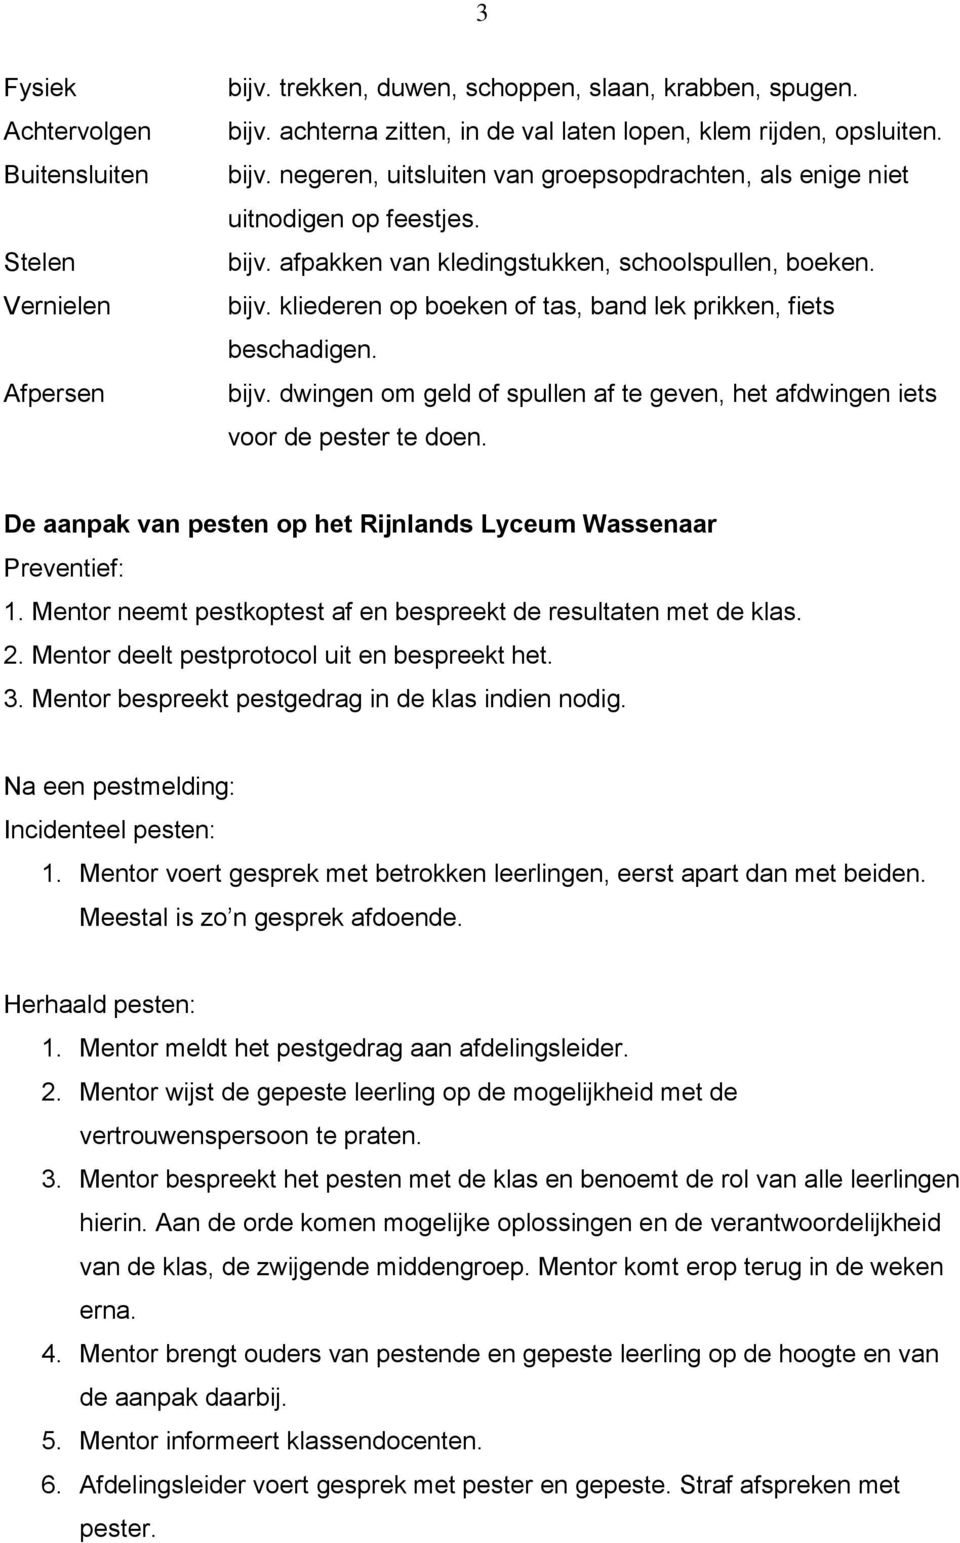 De aanpak van pesten op het Rijnlands Lyceum Wassenaar Preventief: 1. Mentor neemt pestkoptest af en bespreekt de resultaten met de klas. 2. Mentor deelt pestprotocol uit en bespreekt het. 3.